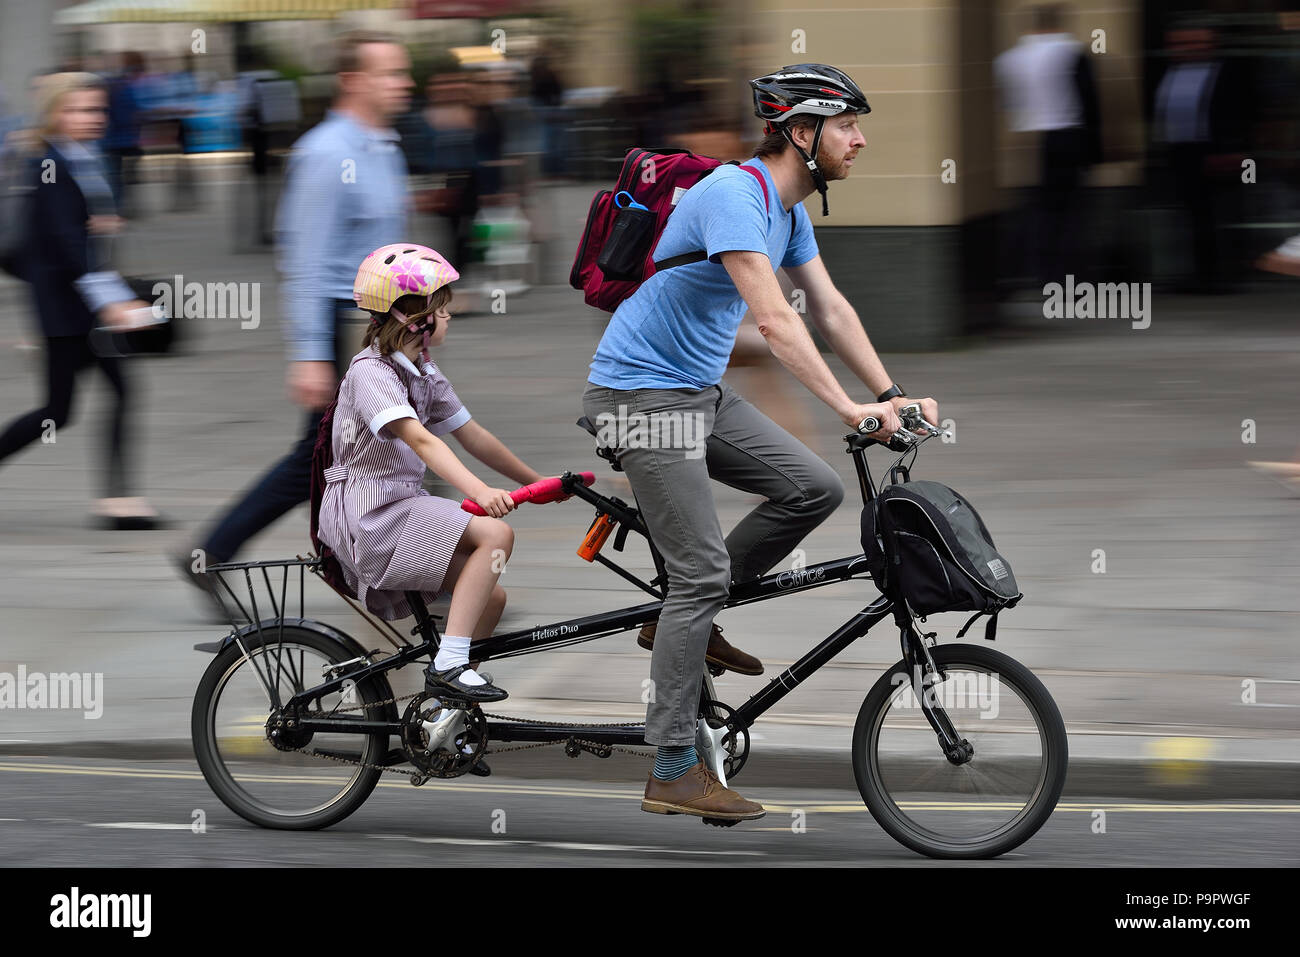 Une forme alternative de transport sur London's school run Banque D'Images